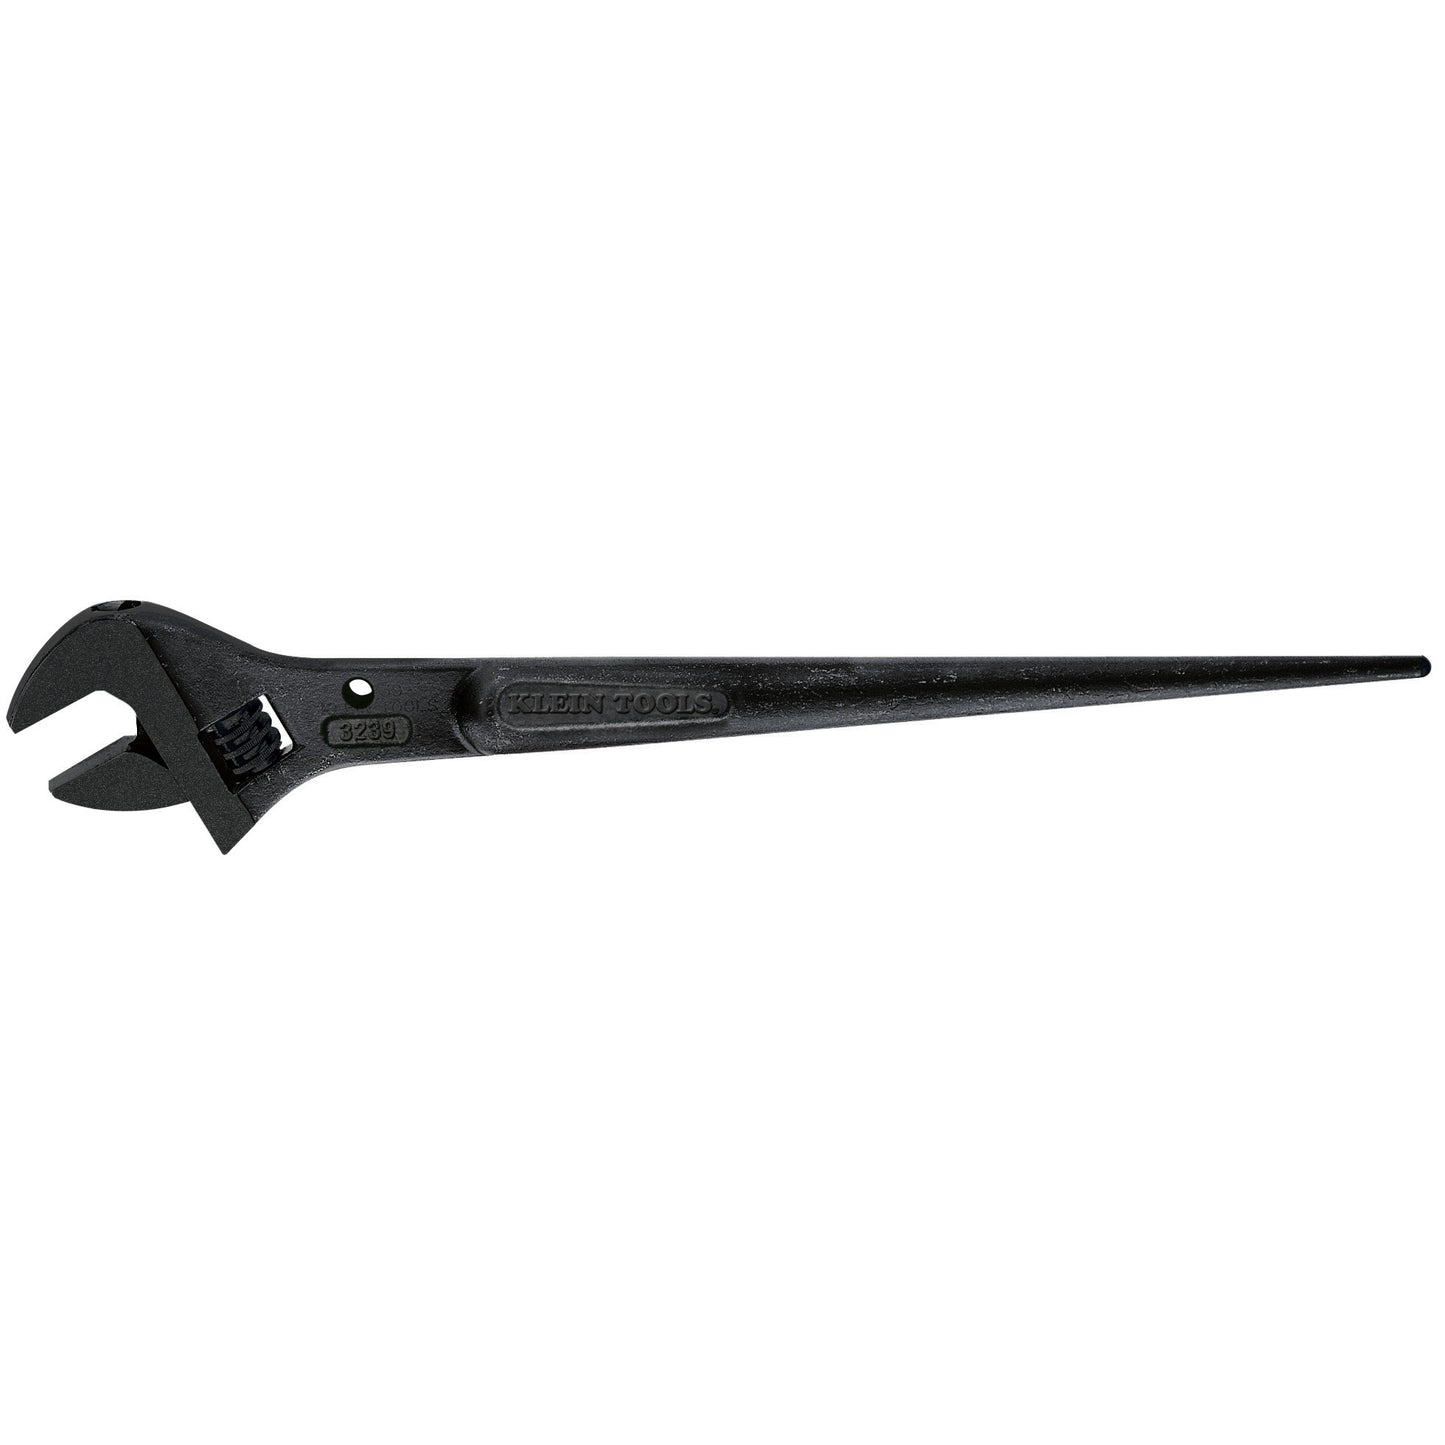 16" Adjustable Klein Spud Wrench (3239)